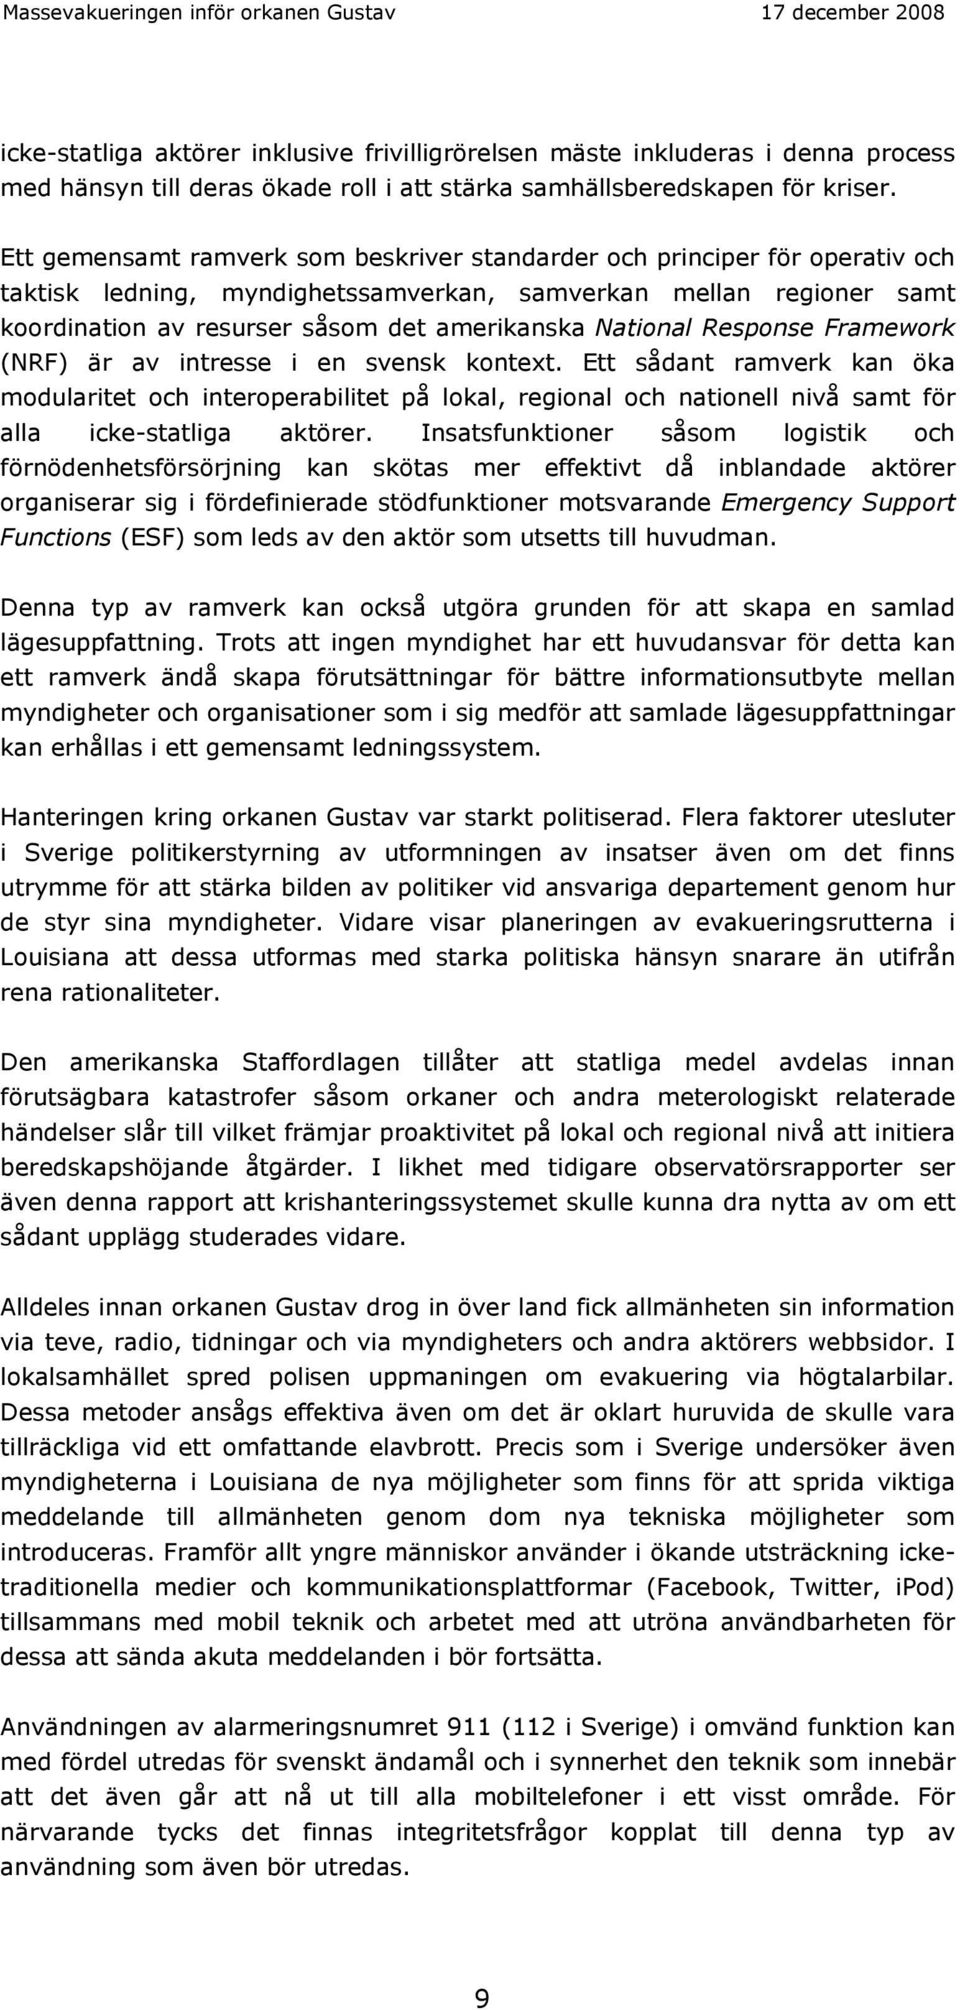 National Response Framework (NRF) är av intresse i en svensk kontext.